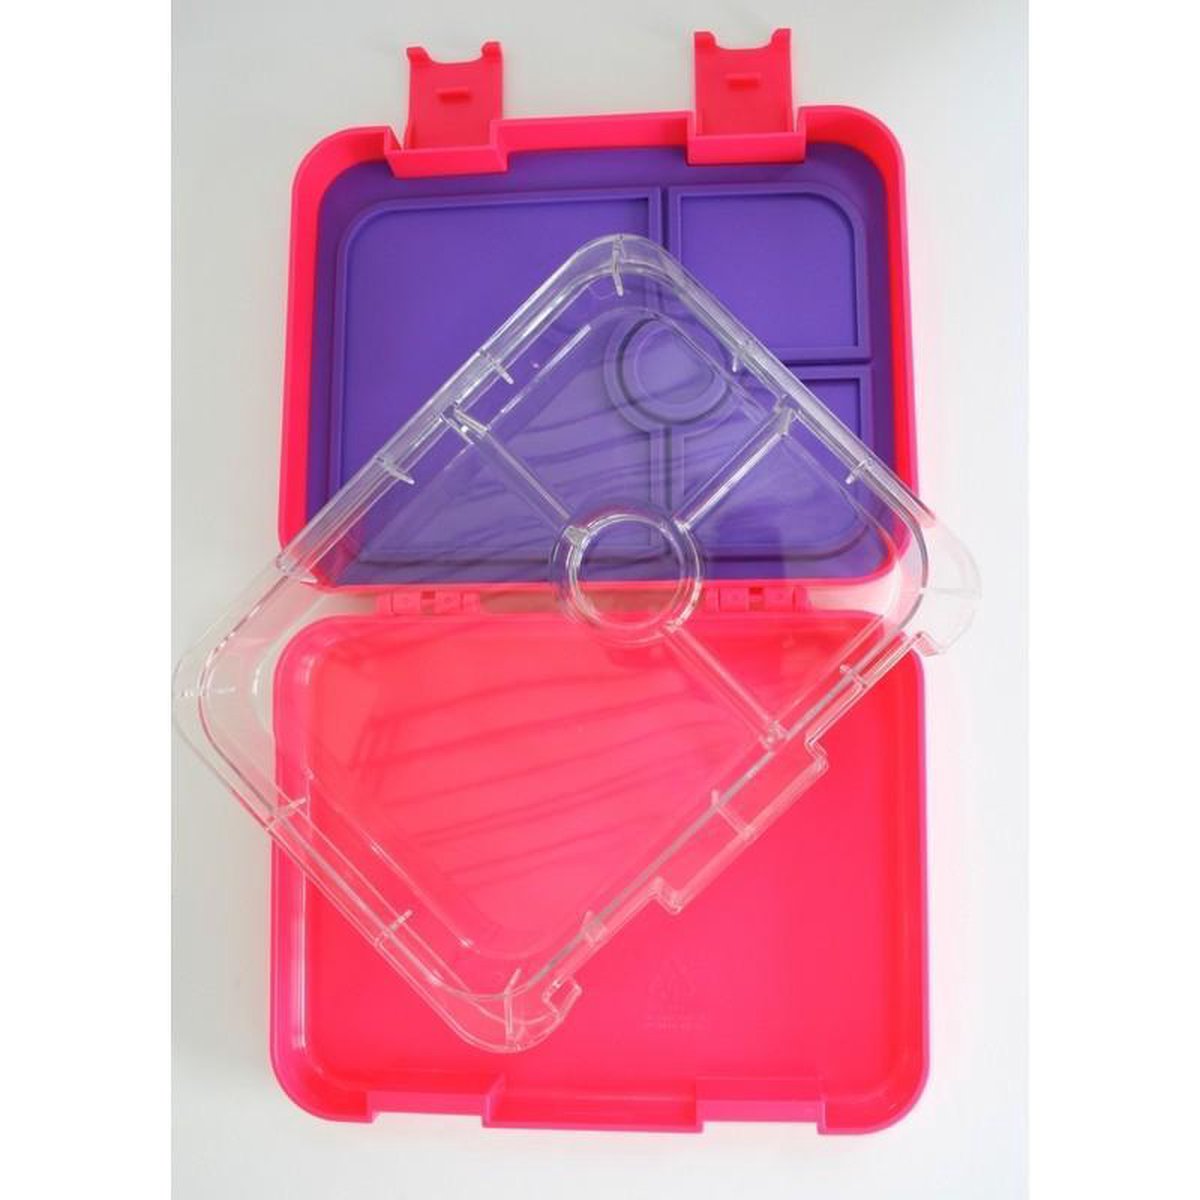 Gaffelbox 4 - Roze - Bento lunchbox/broodtrommel met 4 lekvrije vakjes voor jong en oud